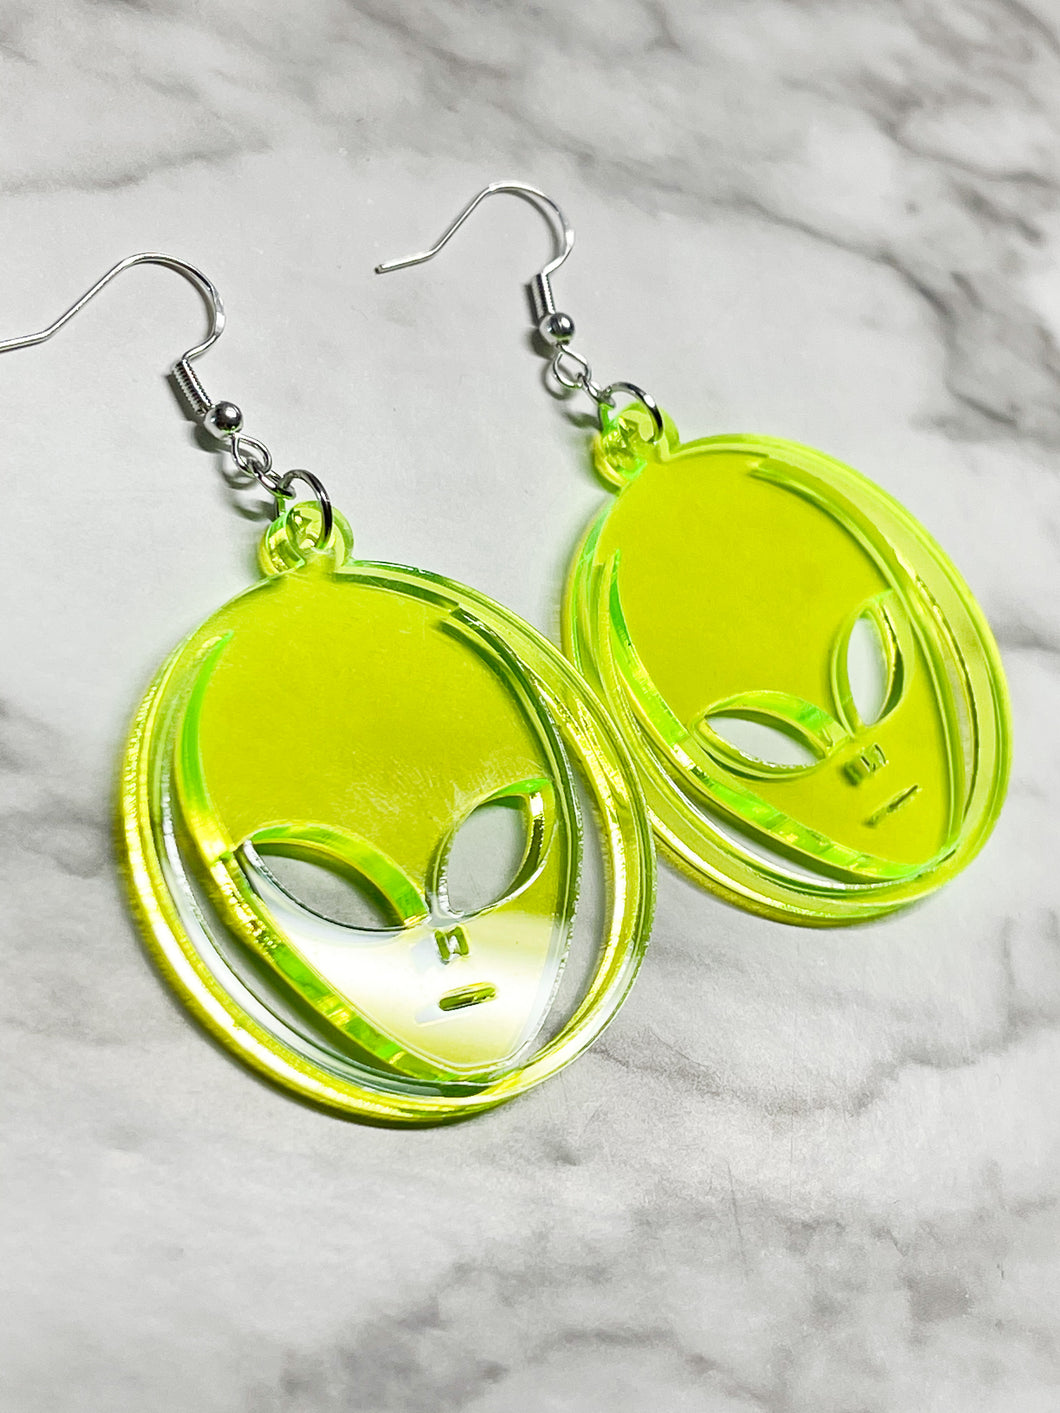 Alien Face Earrings - Fun Funky Unique Neon Green Jewelry